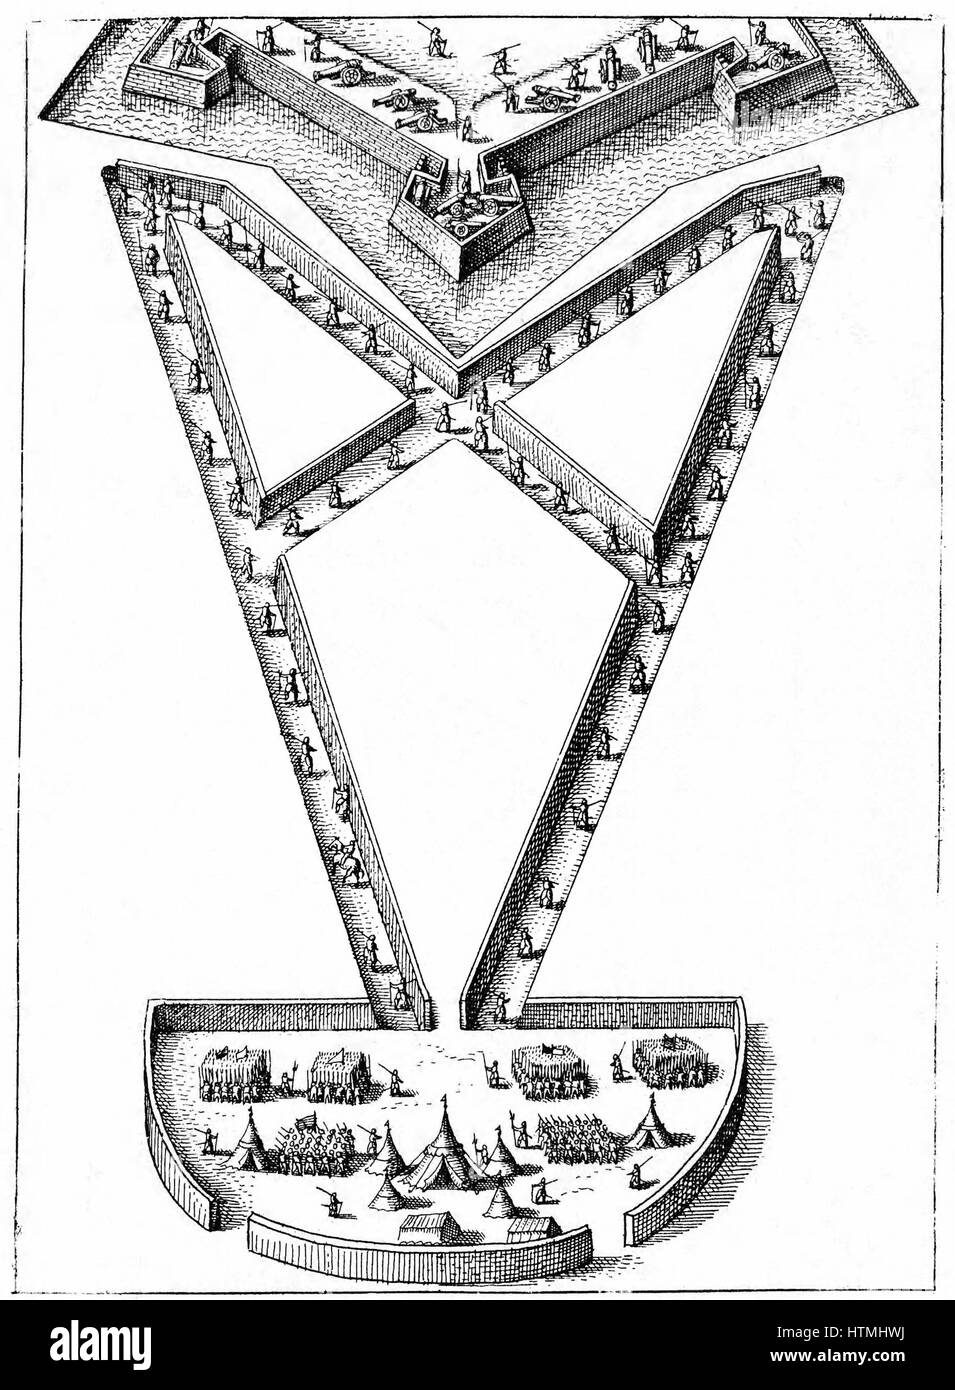 Design für Feldlager außerhalb einer belagerten Festung. Gravur von Robert Fludd "... Utriusque Cosmi Historia" Oppenheim 1617-19 Stockfoto